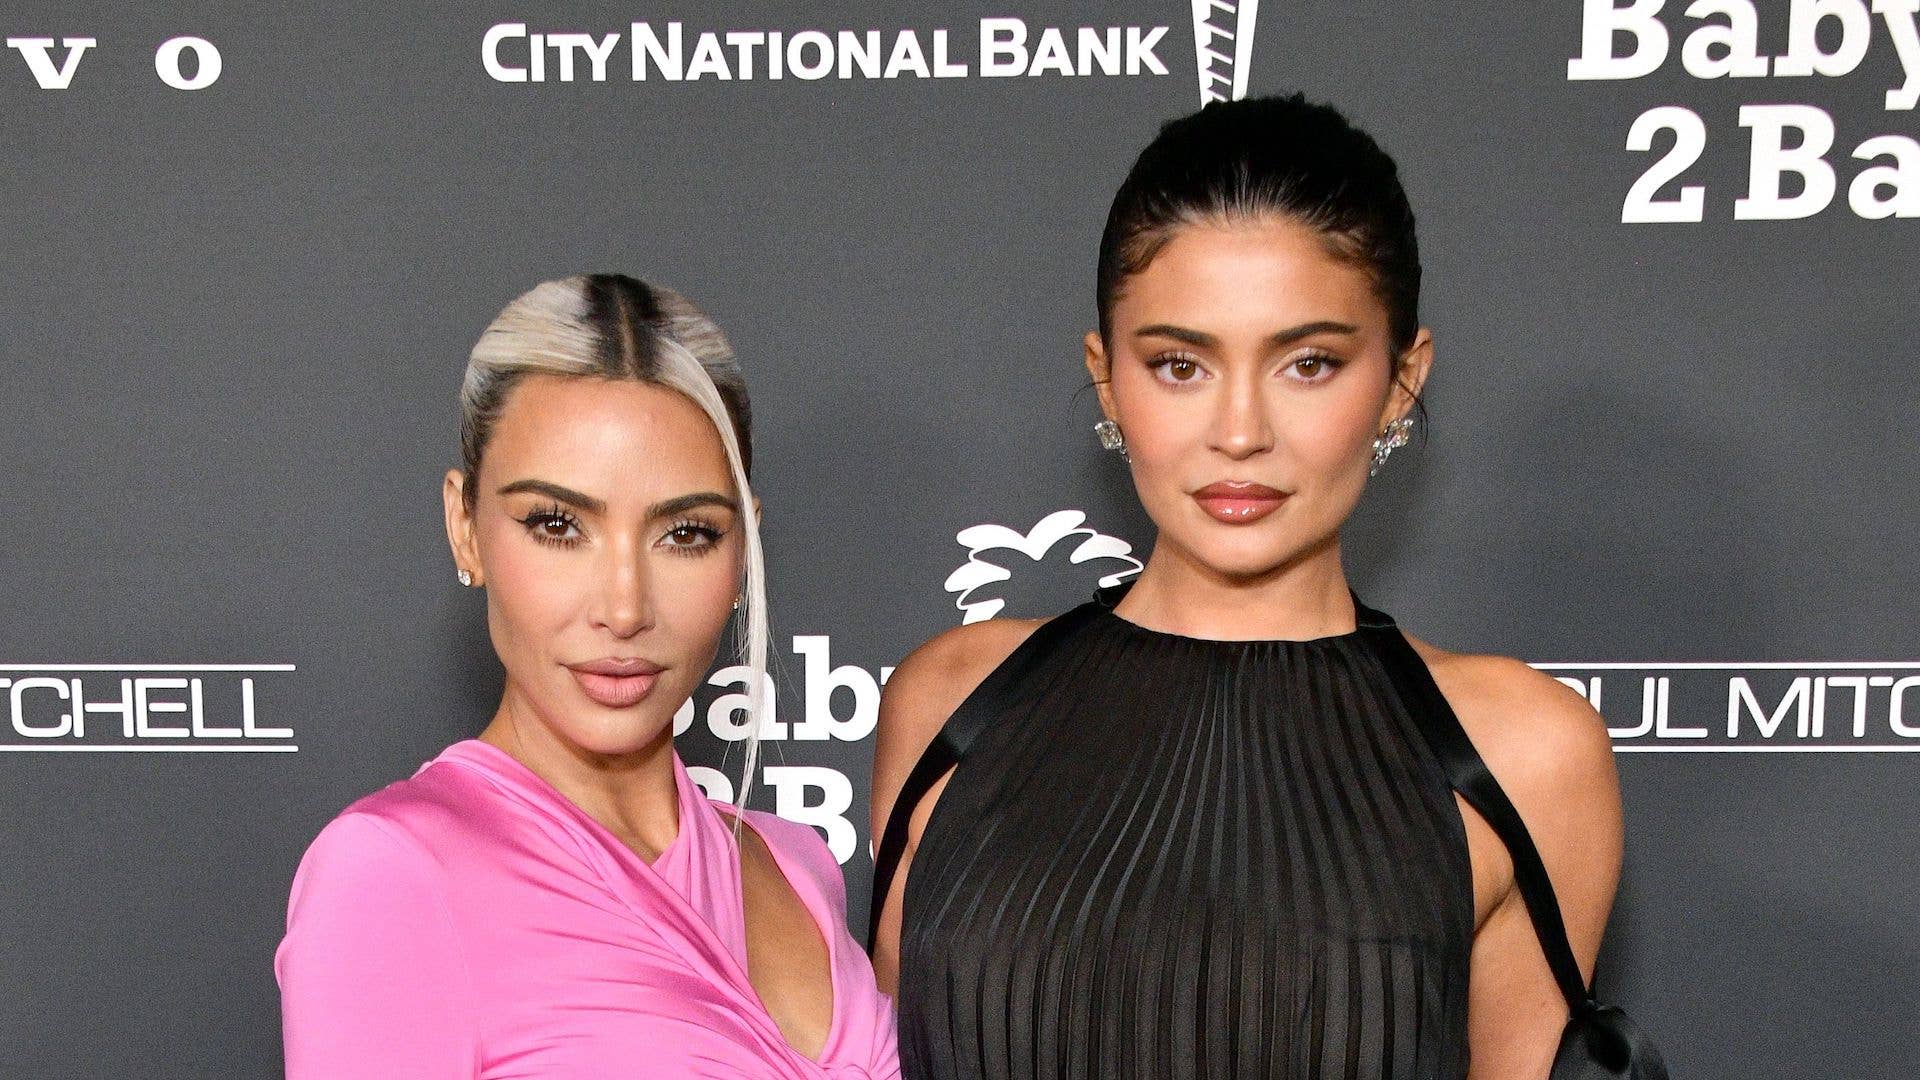 Steal her Look: Kim Kardashian- Reader Request